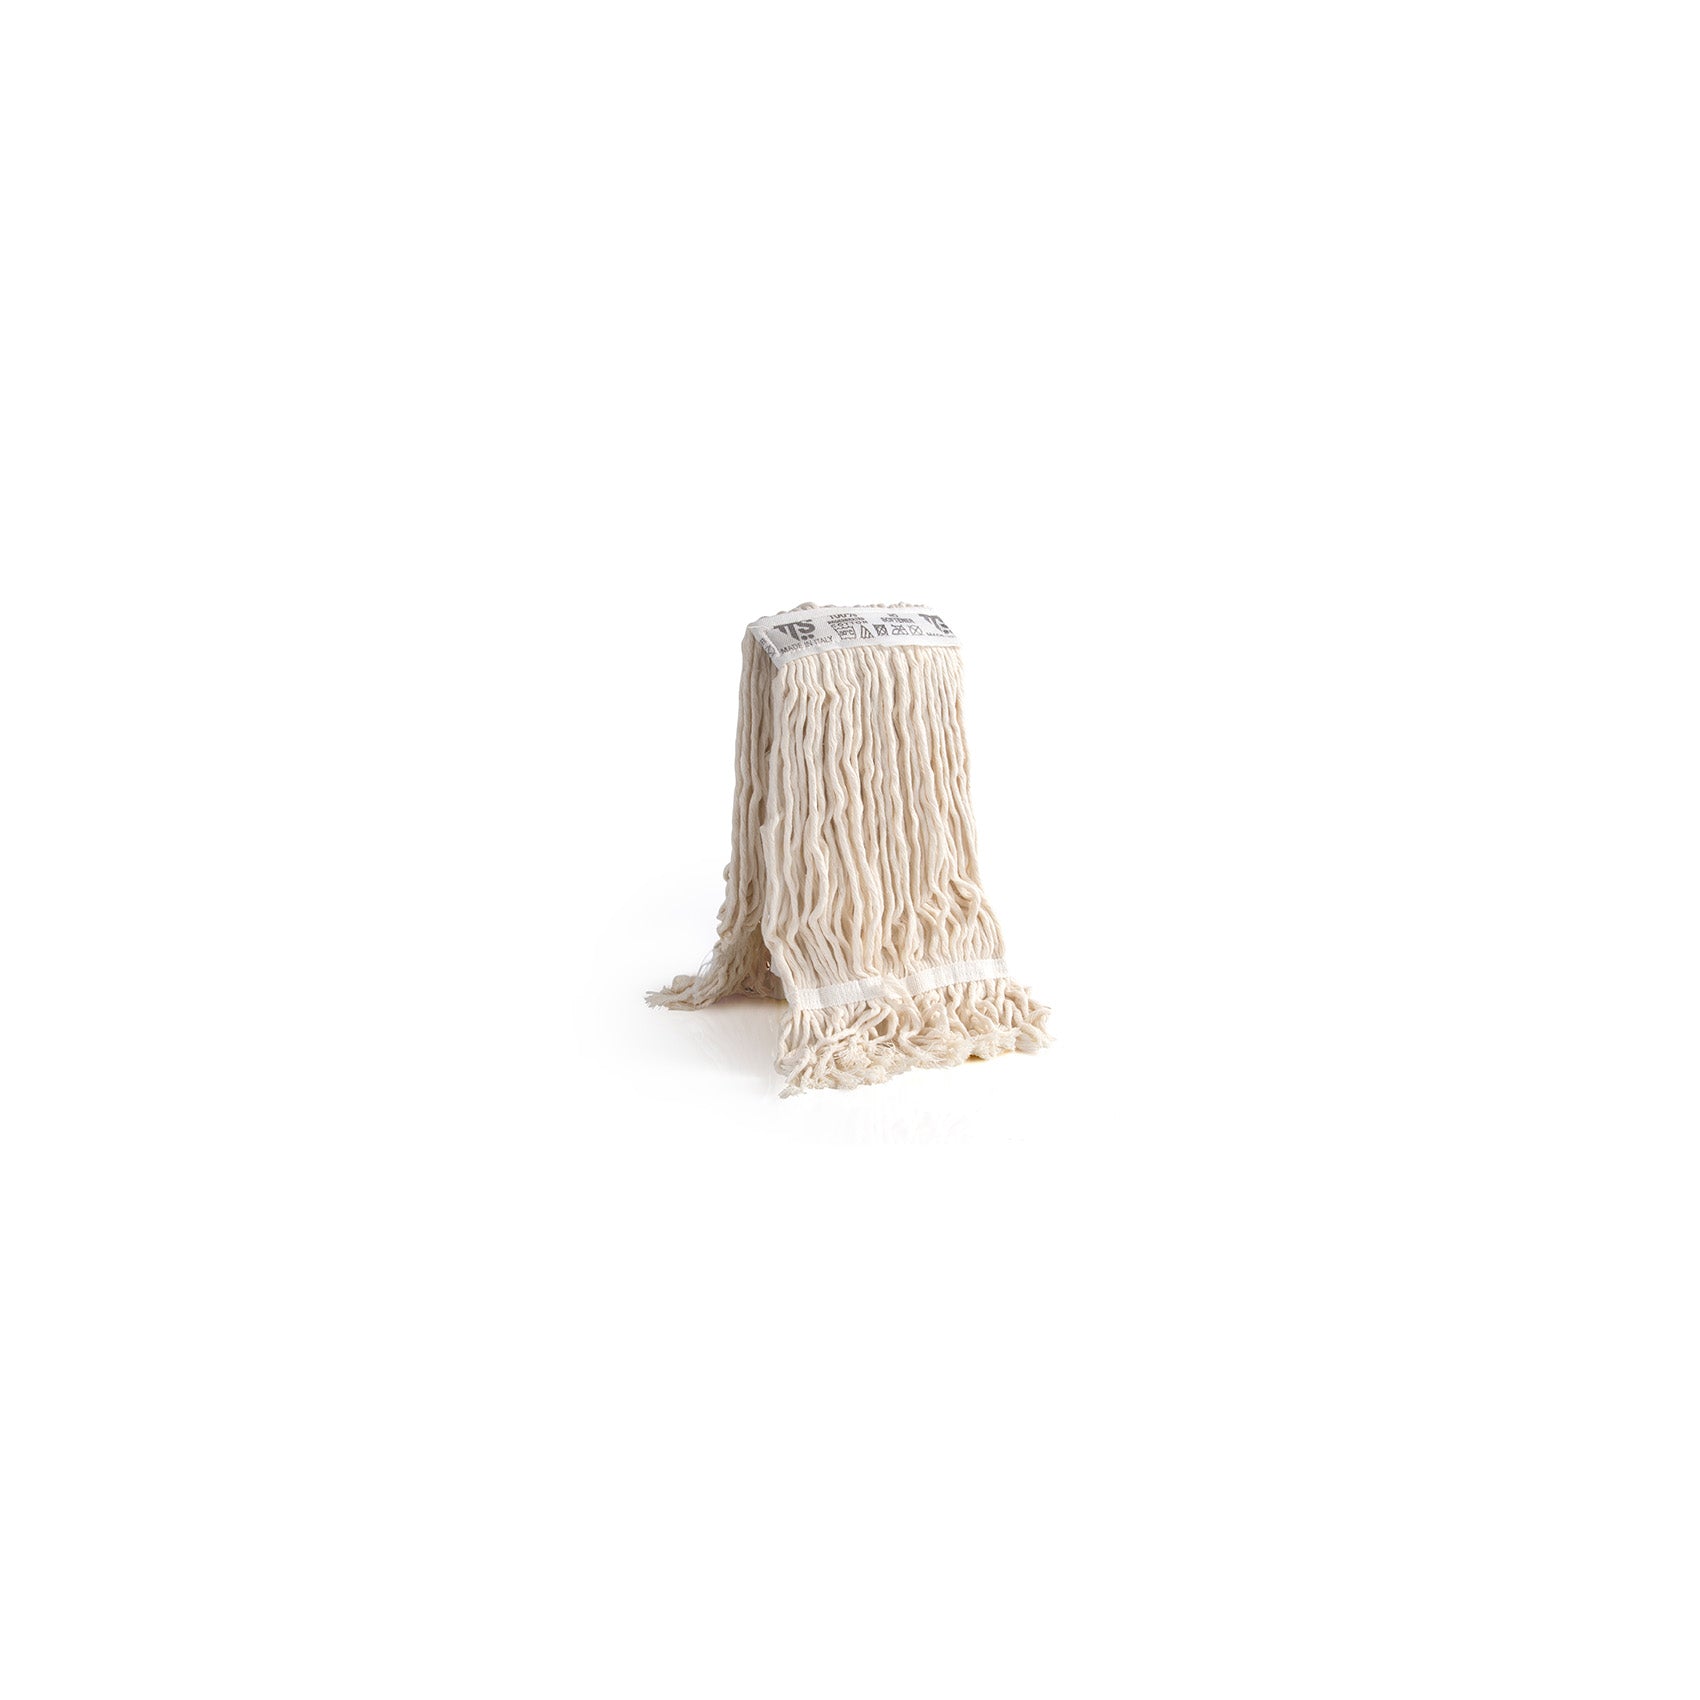 Mopa algodão com banda com faixa central de 5cm. Sistema com pinça para ser usado com espremedor de mandíbulas ou plano. Ideal para limpar sujidades residuais que necessitem de enxaguamento recorrente das fibras.